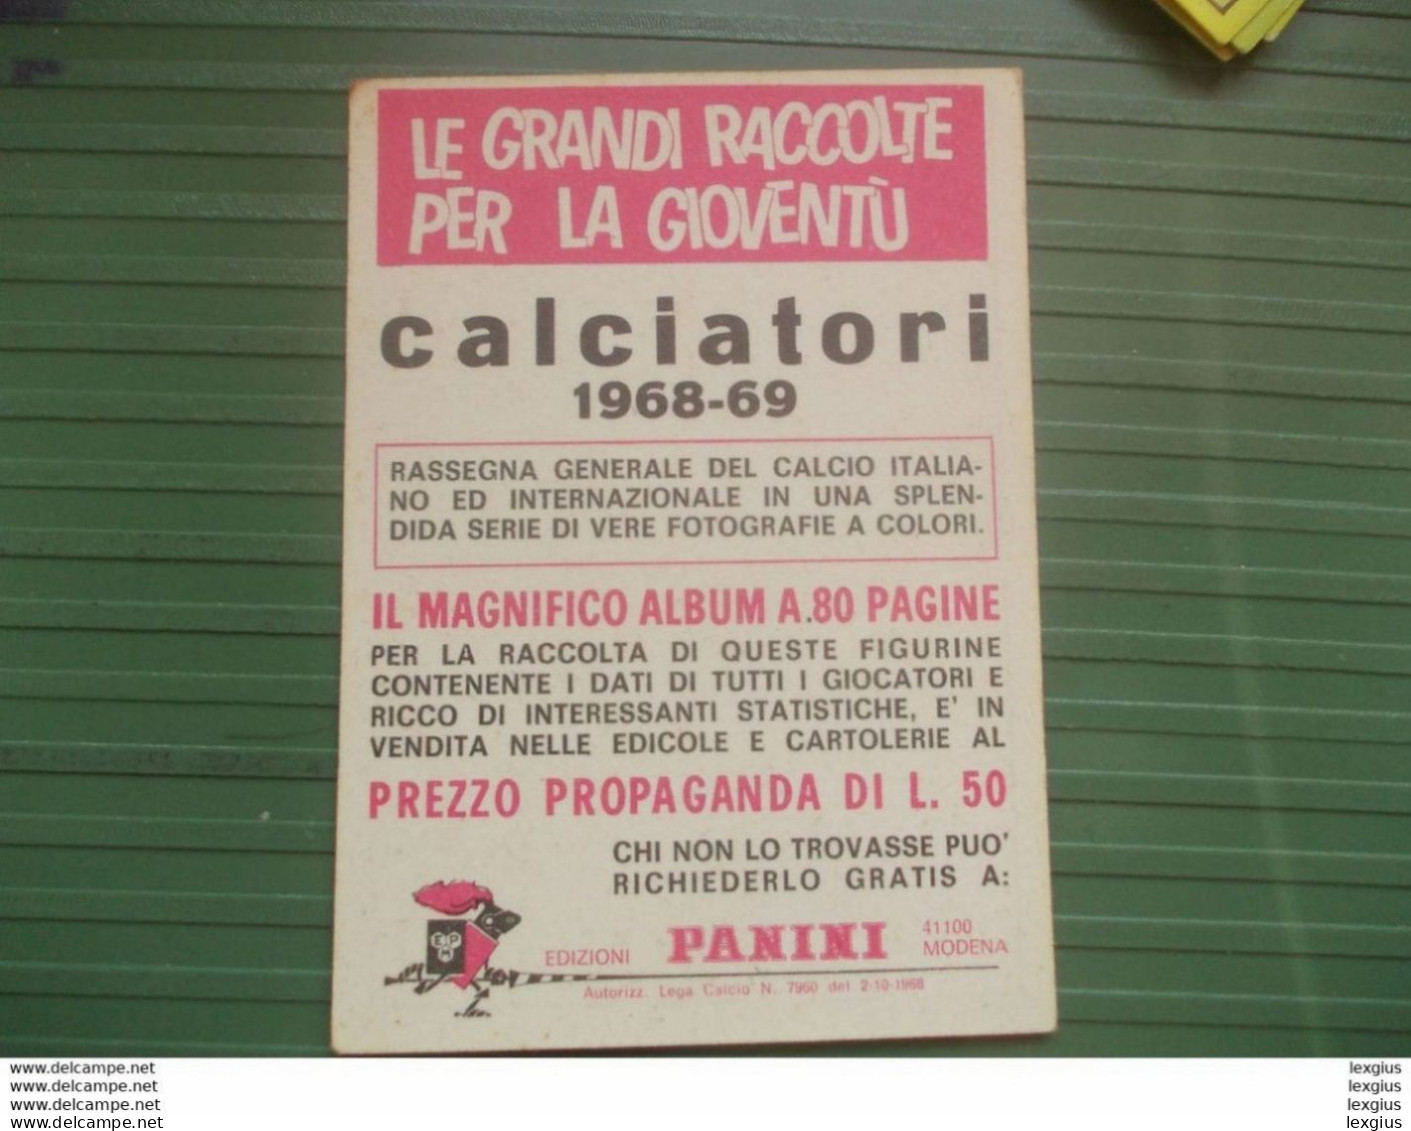 RIVERA STORIA DELLE COPPE ALBUM FIGURINE CALCIATORI PANINI 1968 69 ORIGINAL UNUSED STICKER (sd) - Edizione Italiana